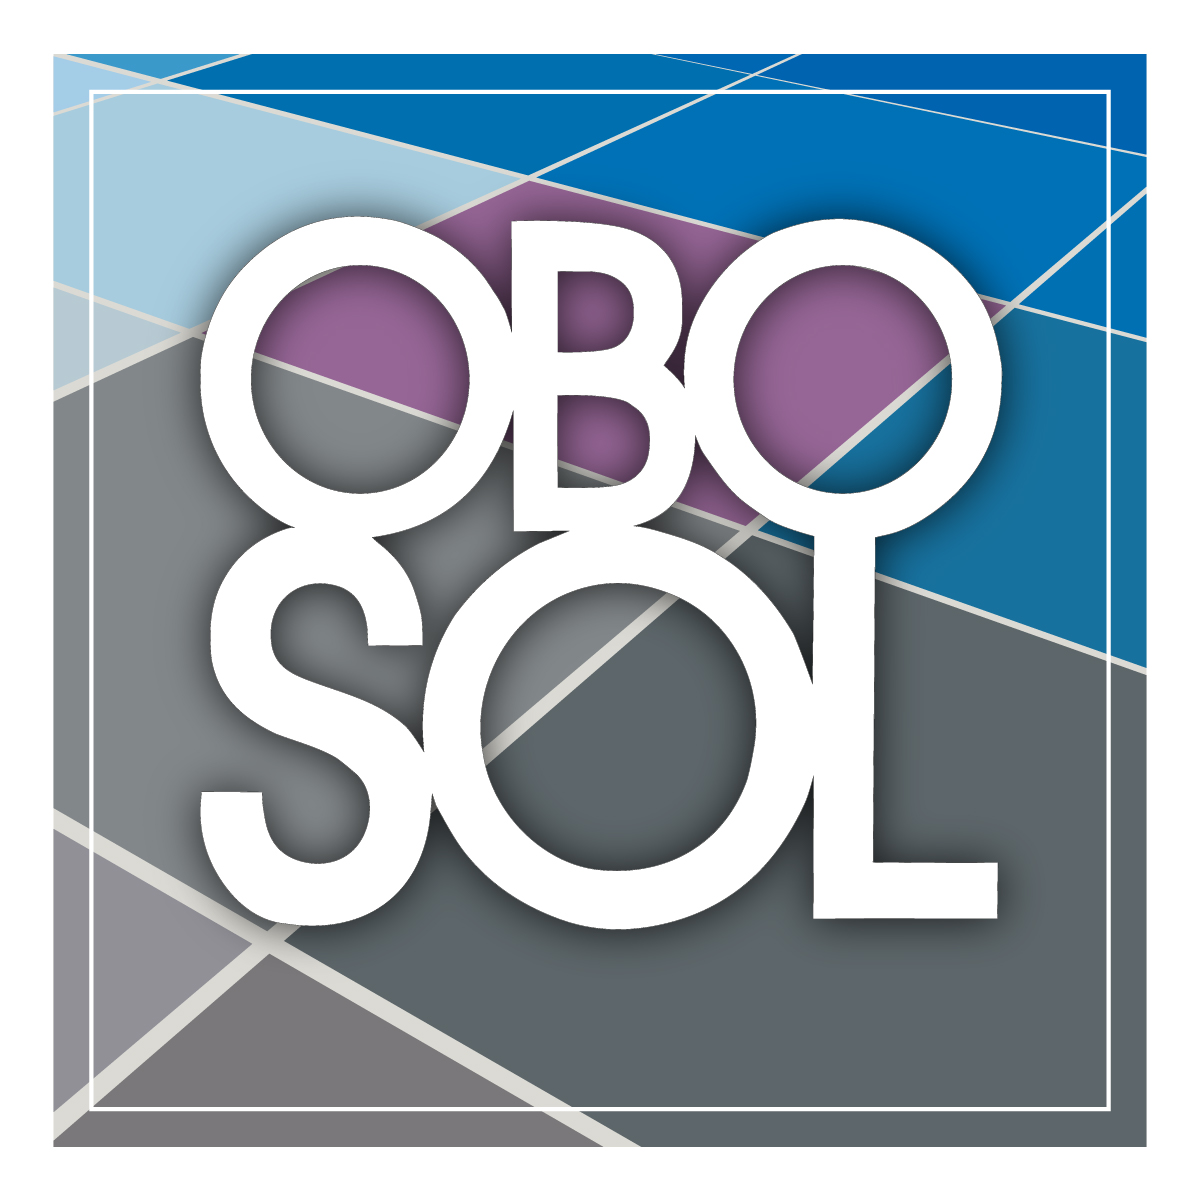 (c) Obo-sol.com